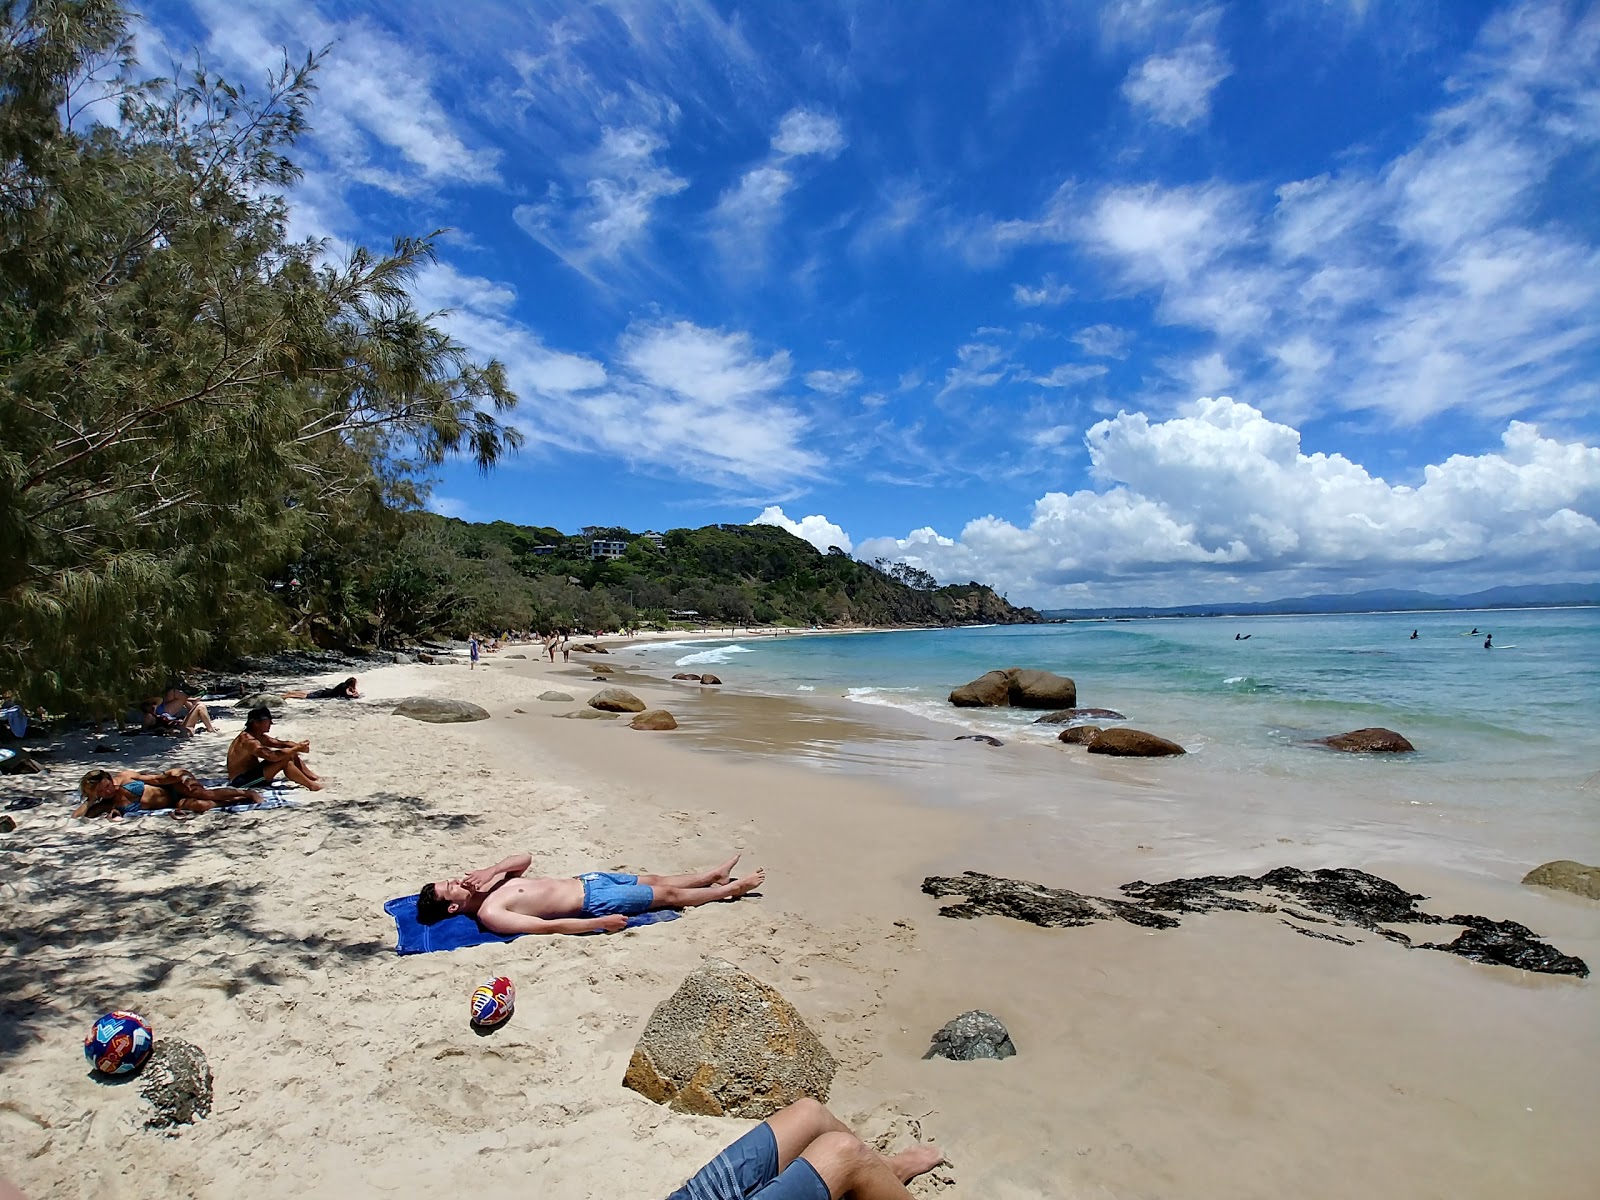 Wategos Beach'in fotoğrafı geniş plaj ile birlikte